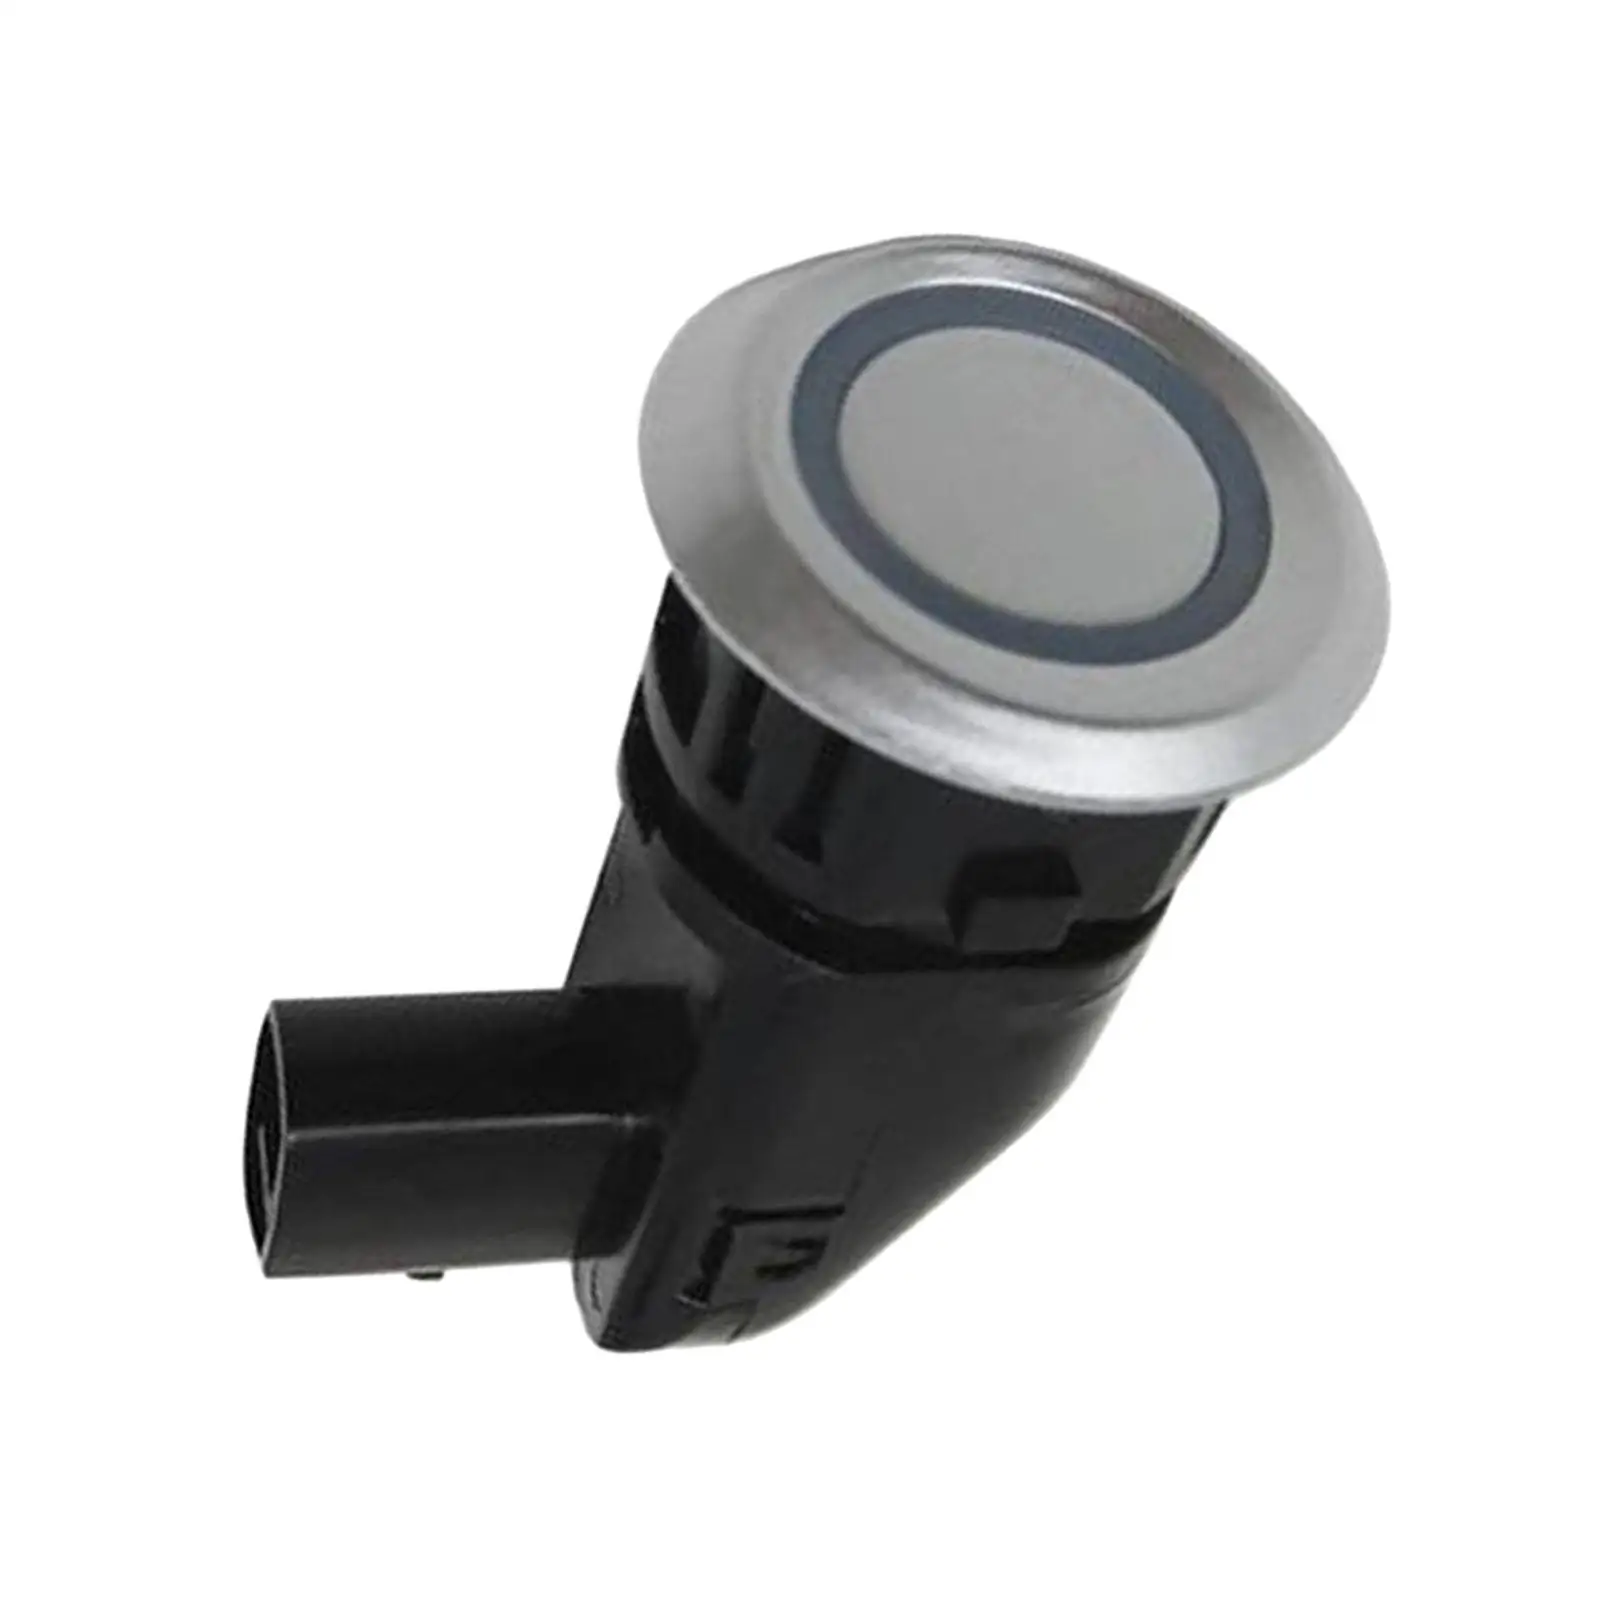 Electromagnetic Parking Sensor Bumper Backup 96673466 Fits for 2014 2012